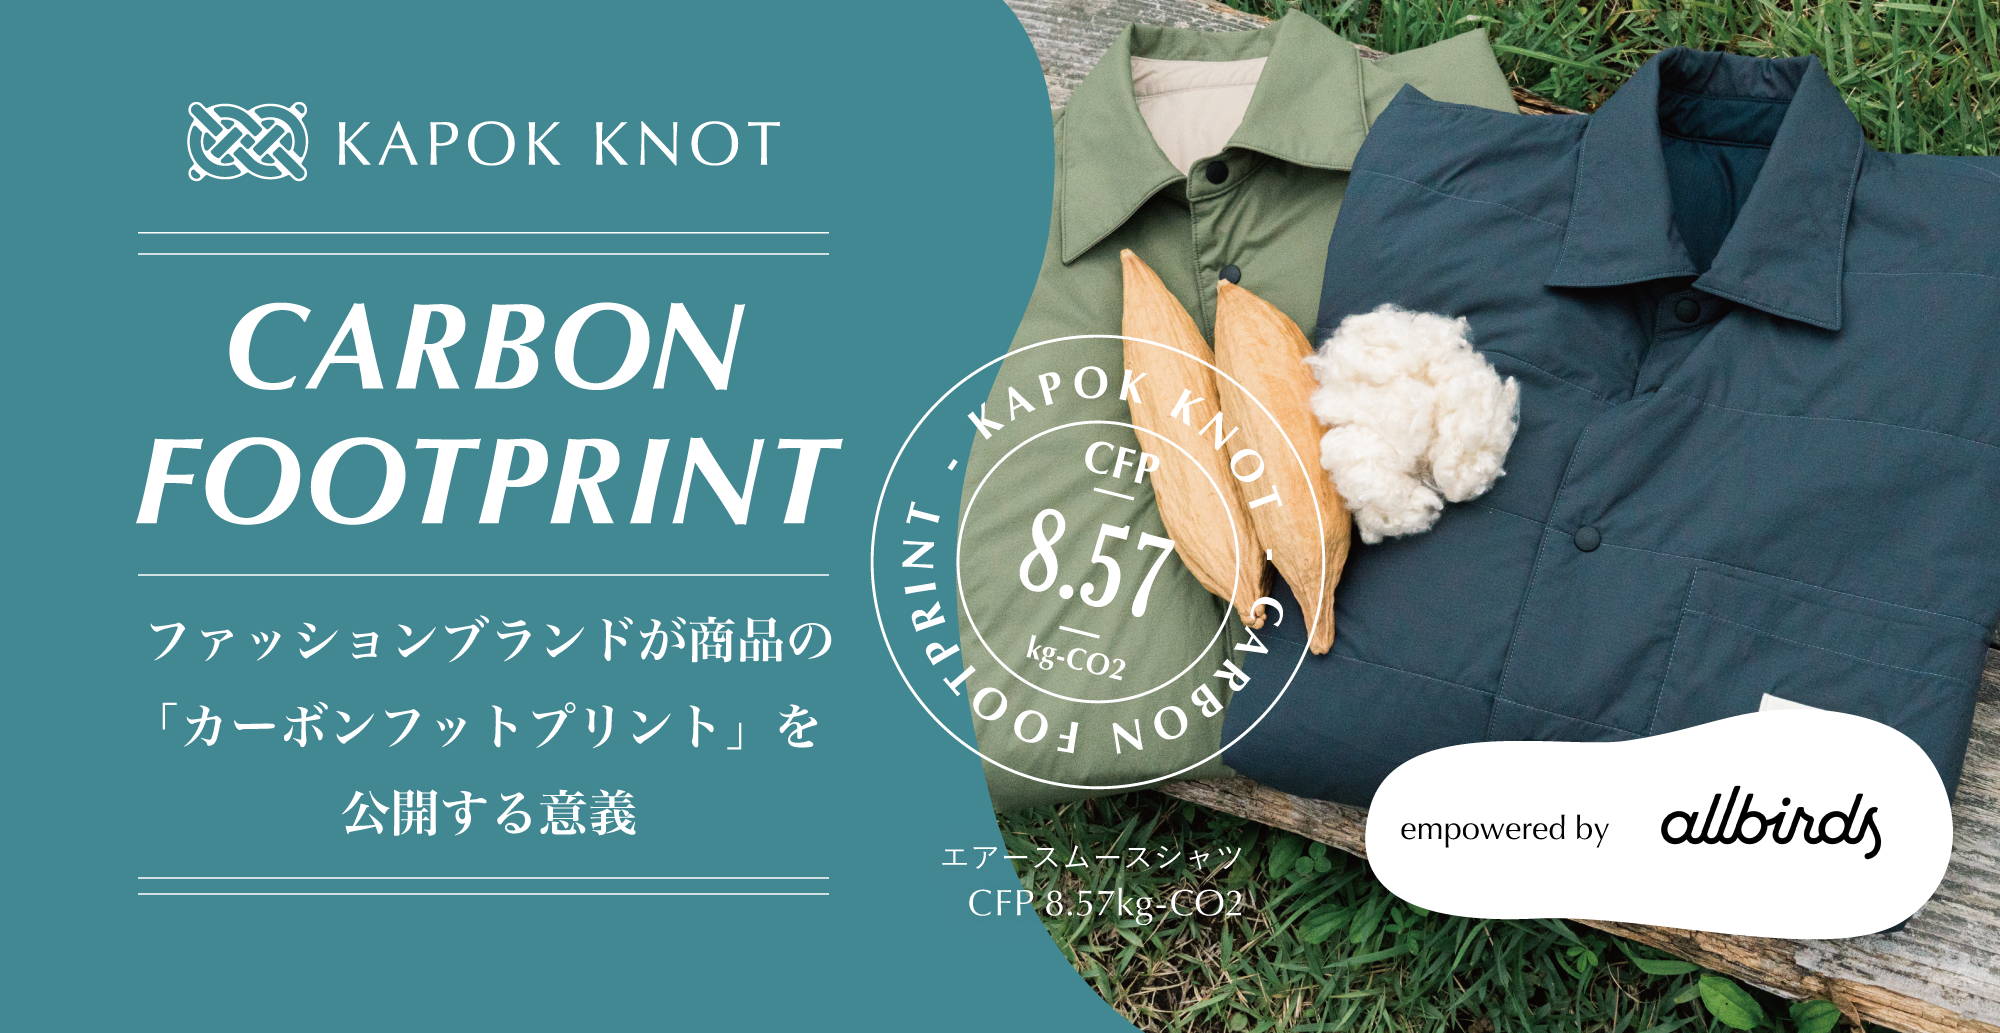 国内ブランド初、木の実由来のファッションブランド「KAPOK KNOT（カポックノット）」が全商品にカーボンフットプリントを明示